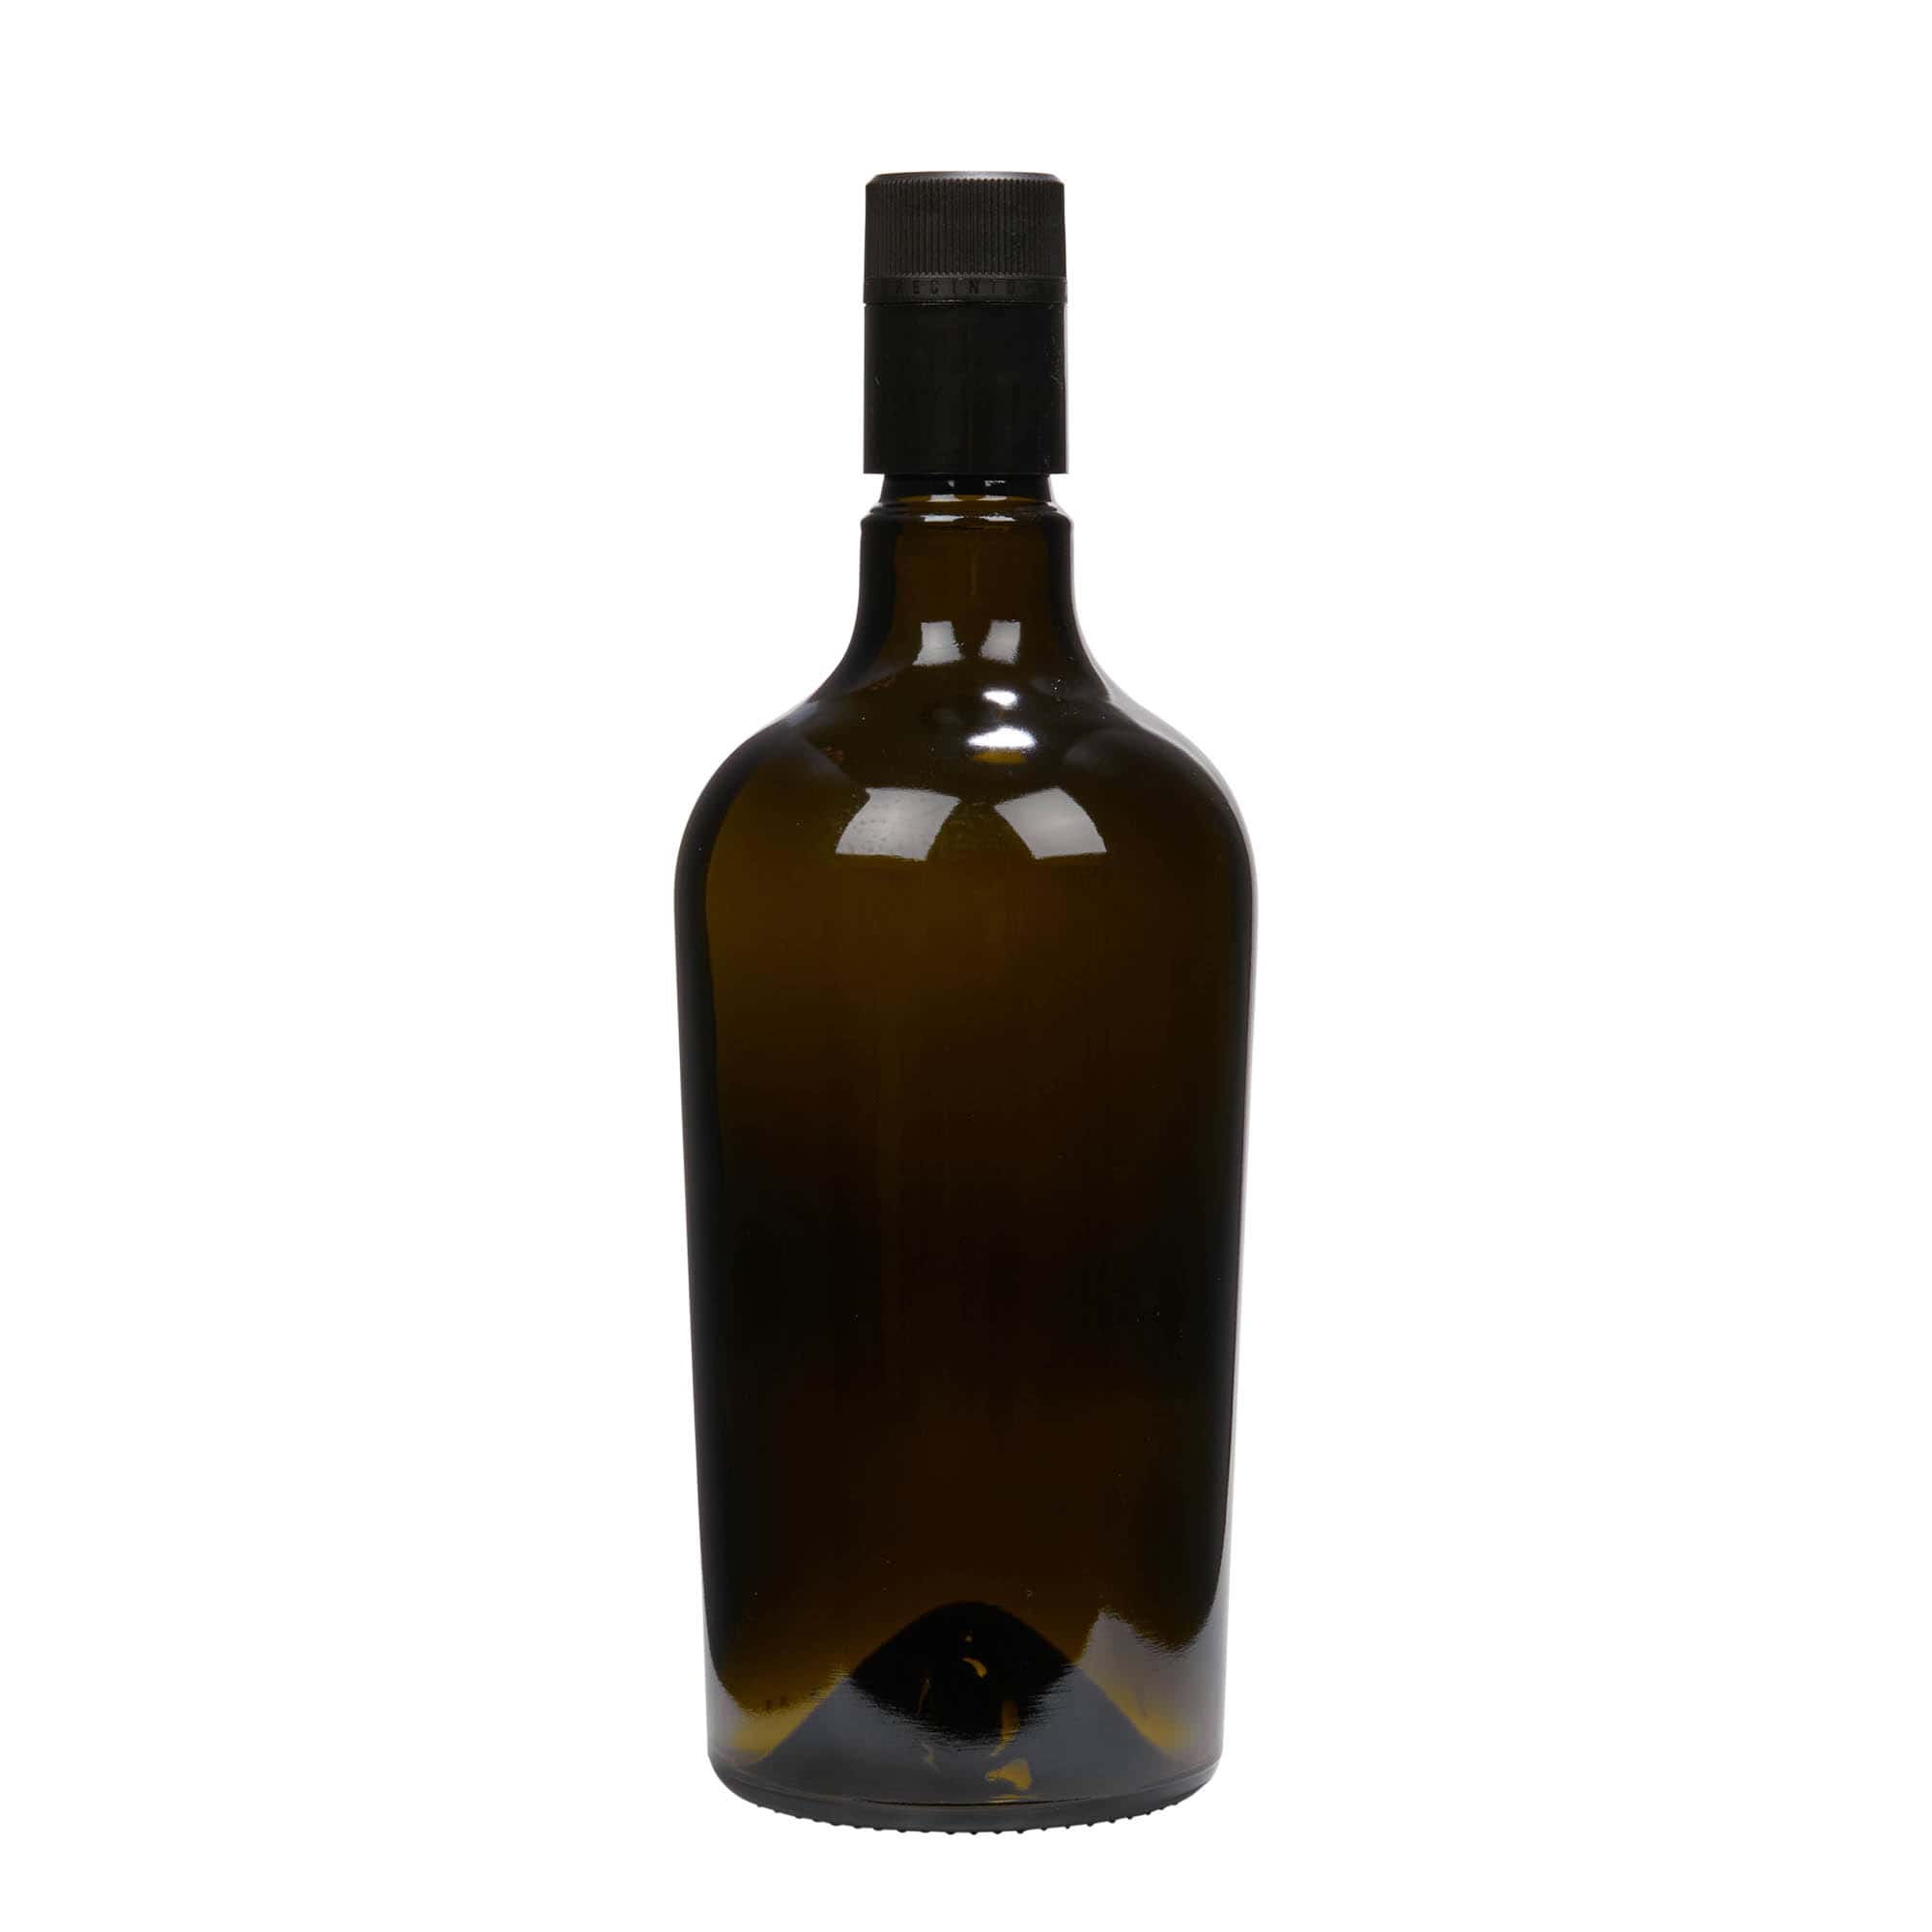 Lahev na ocet/olej 750 ml 'Oleum', sklo, starožitná zelená, ústí: DOP